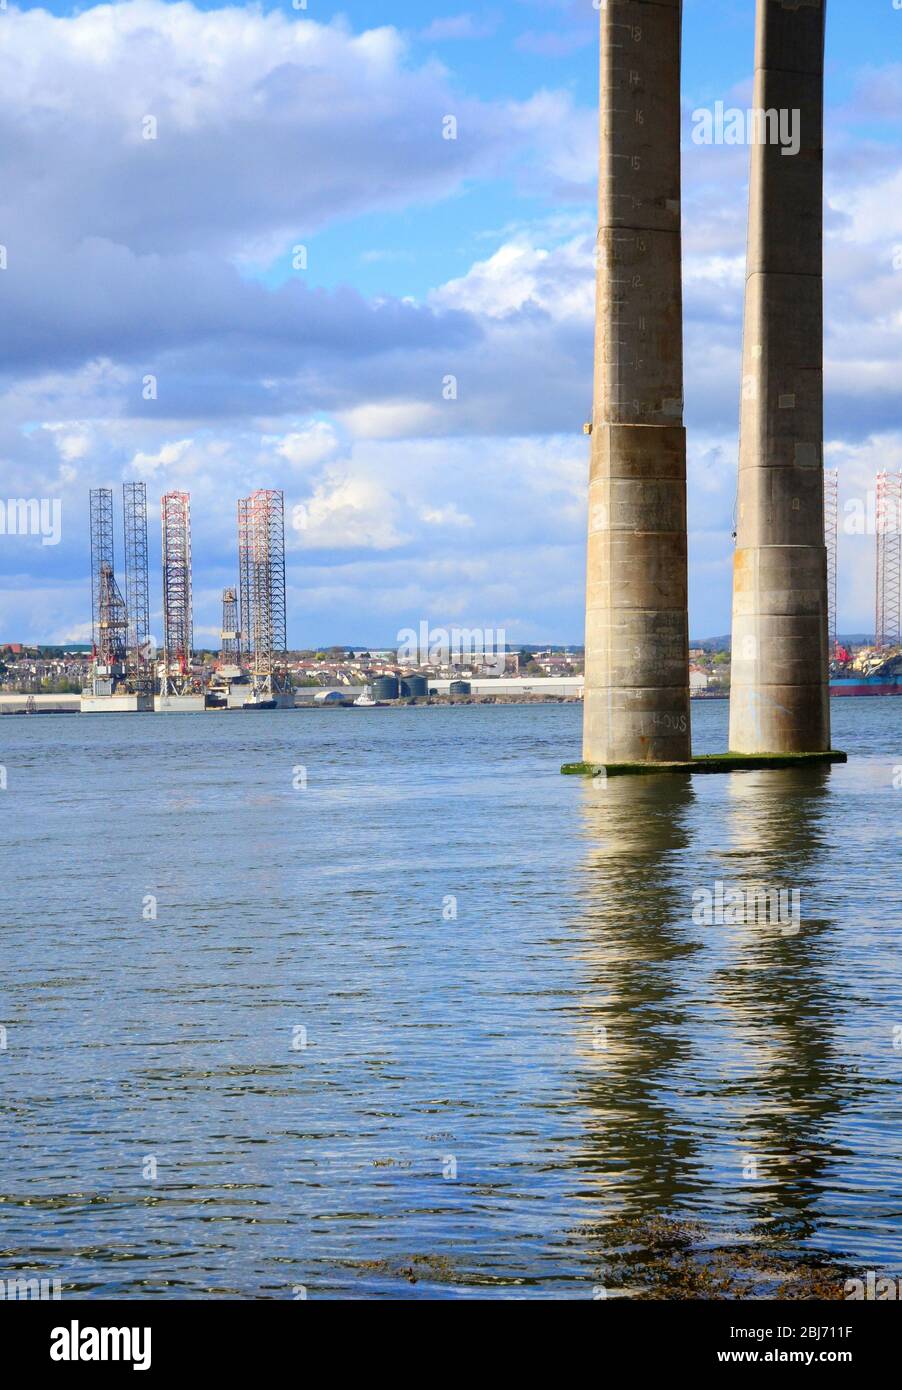 Plataformas petrolíferas de perforación en Dundee Dockside con columnas de muelle del puente de carretera de Tay en primer plano Foto de stock